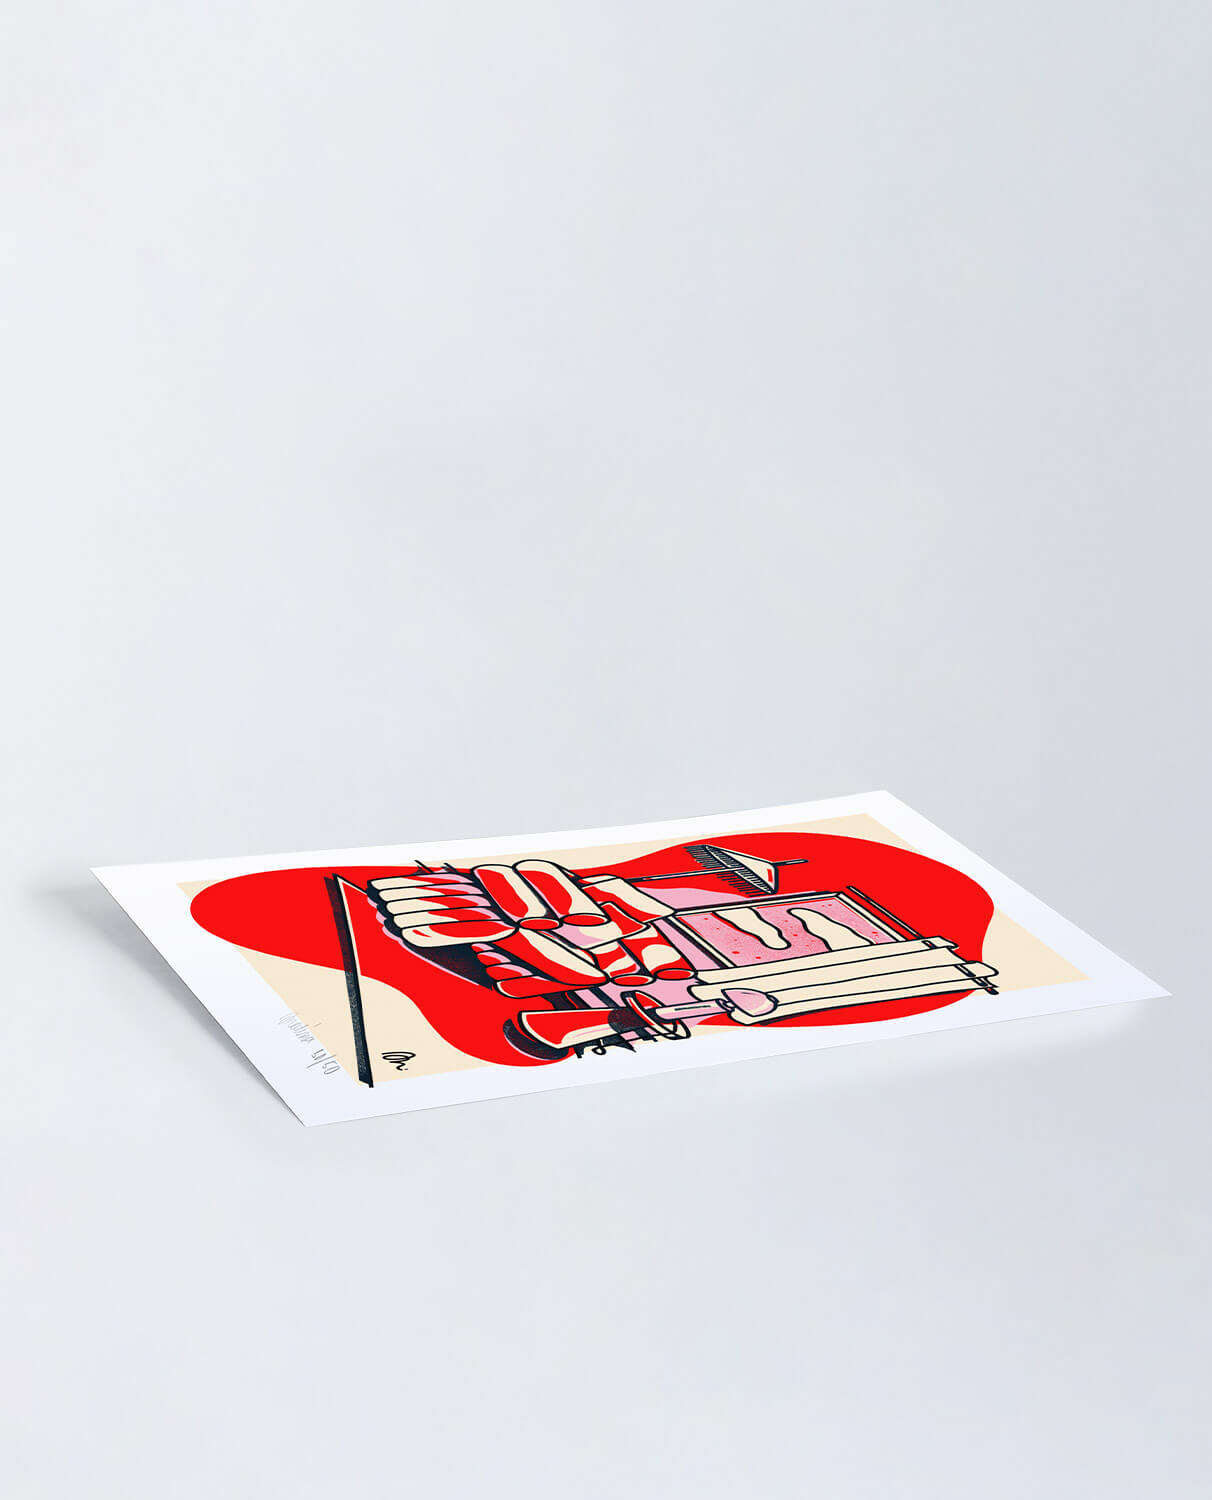 Imprimé Décoratif (29,7x42 cm) Red Misty par Medina Òscar. Édition Limitée, image de la gelerie 2